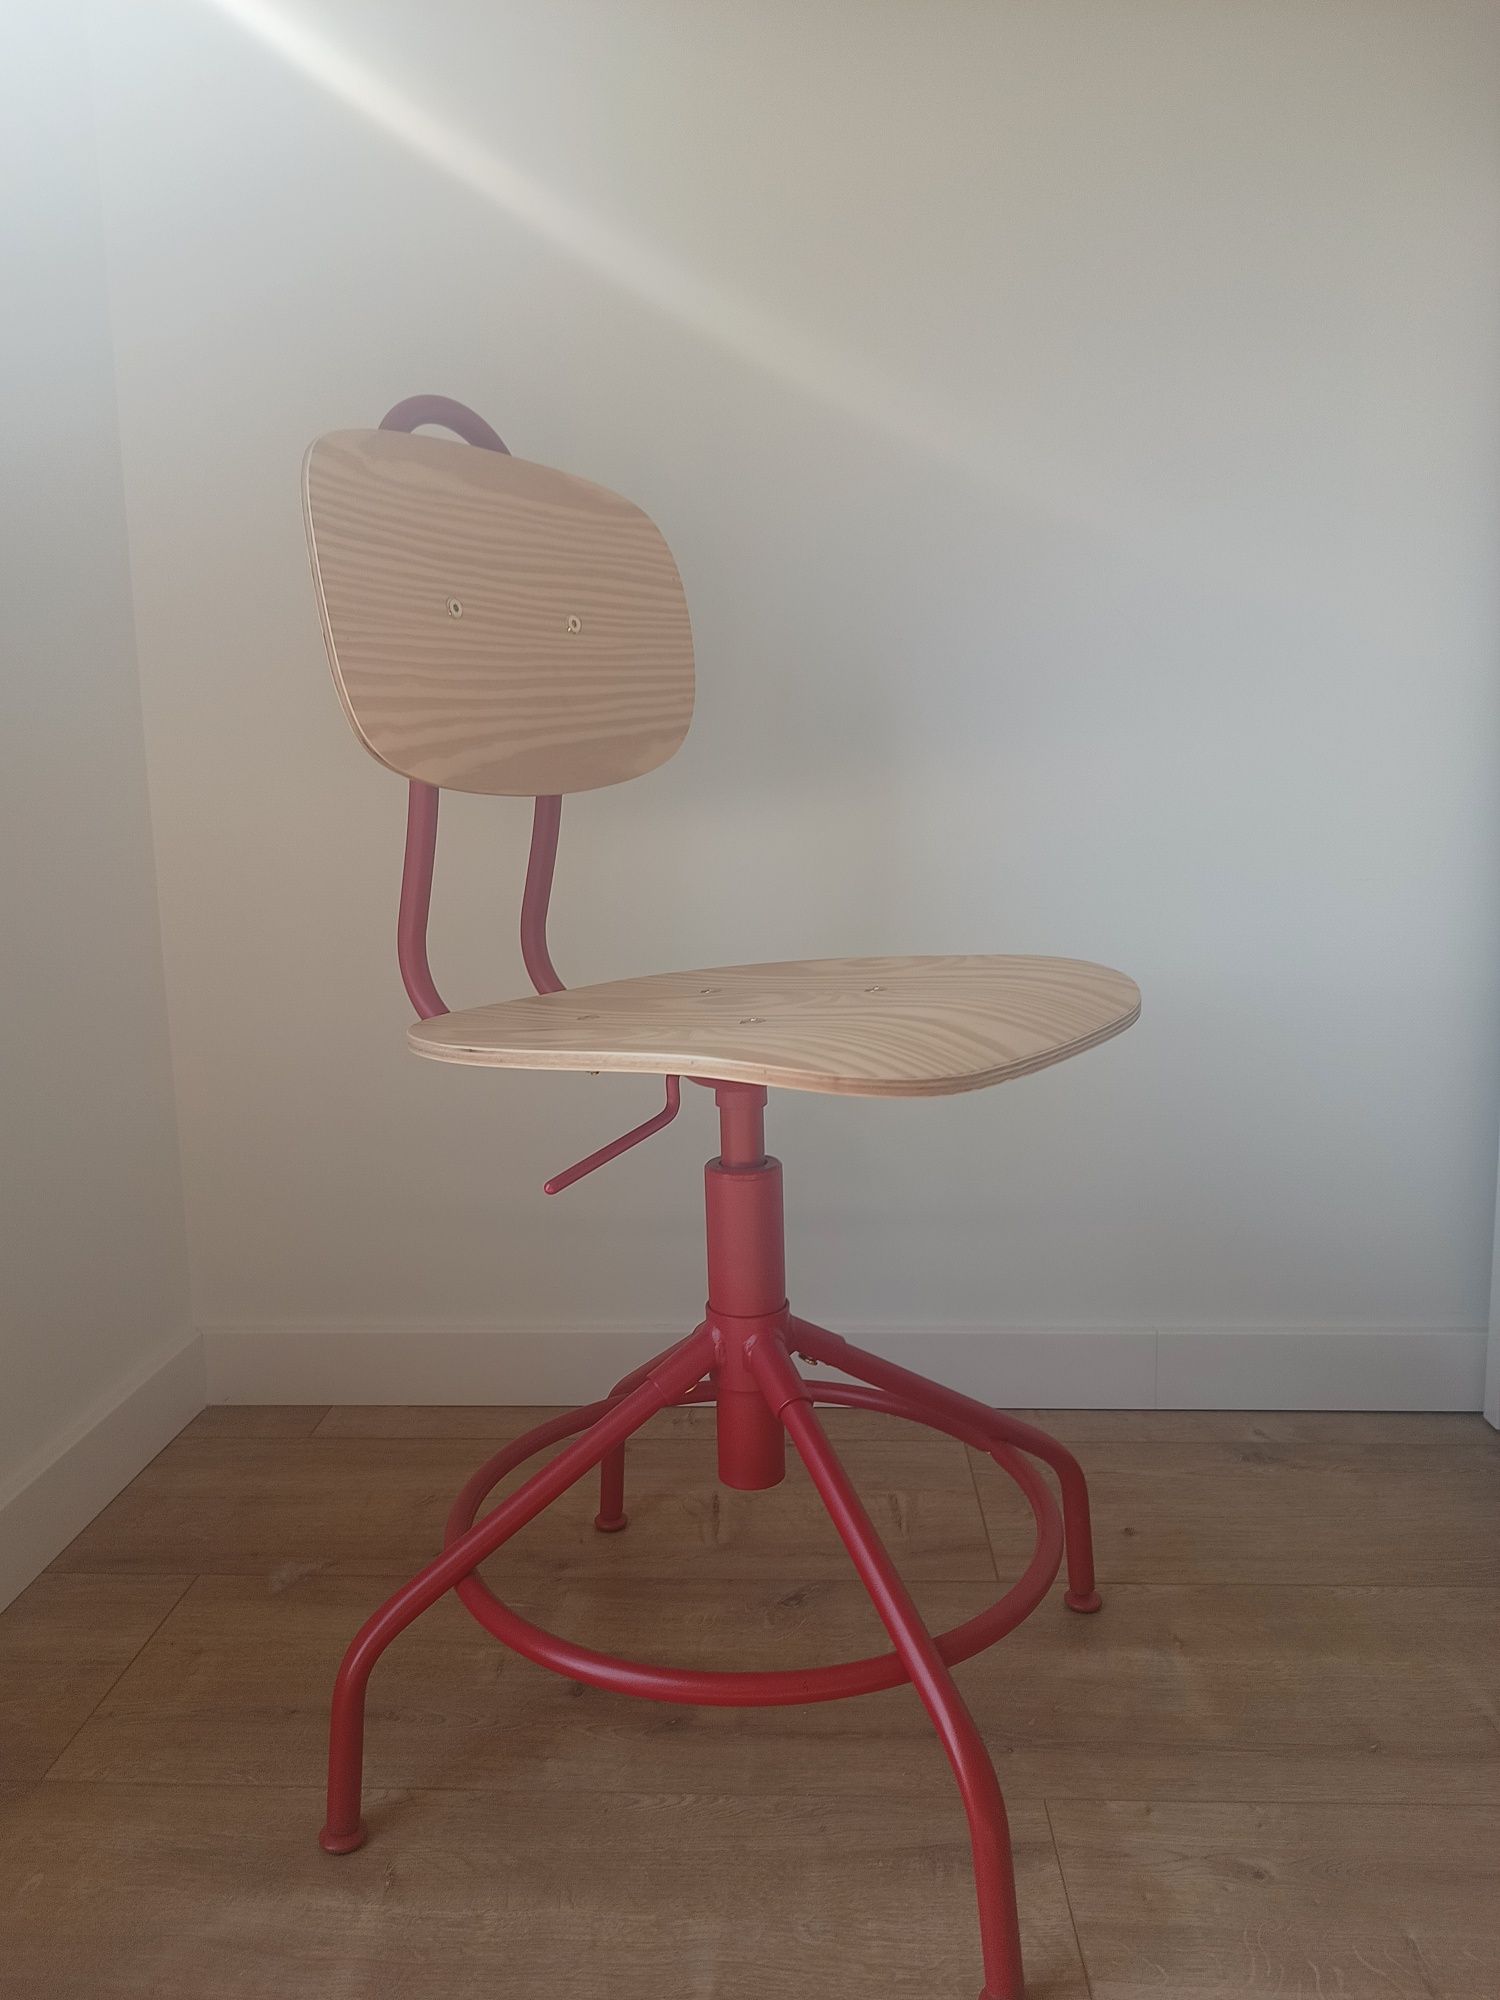 Ikea krzesło obrotowe